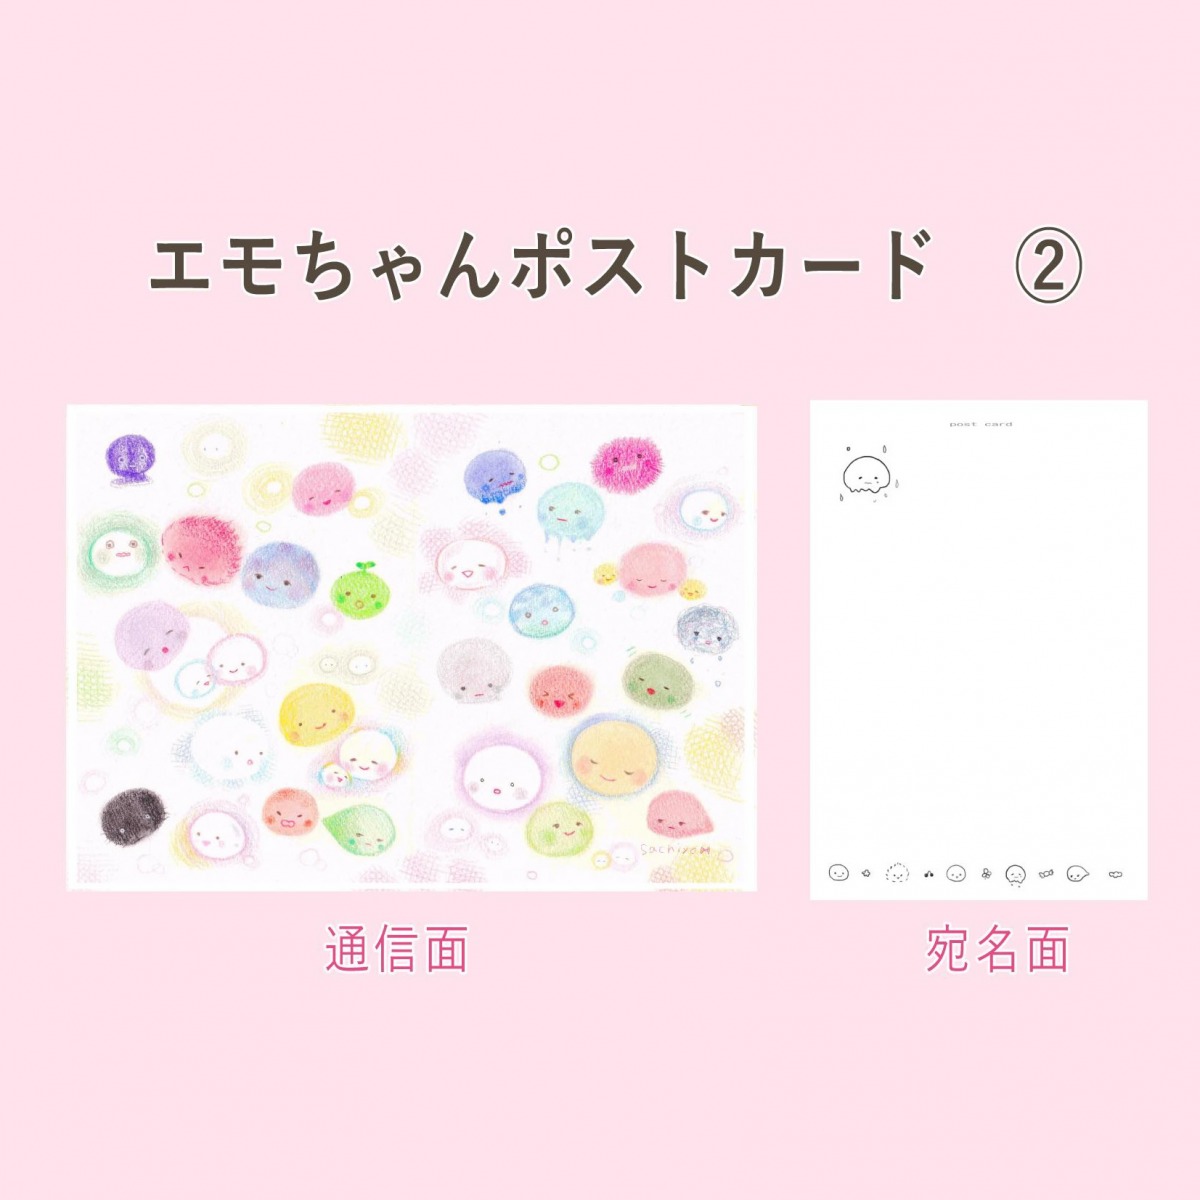 エモちゃんポストカード (2)